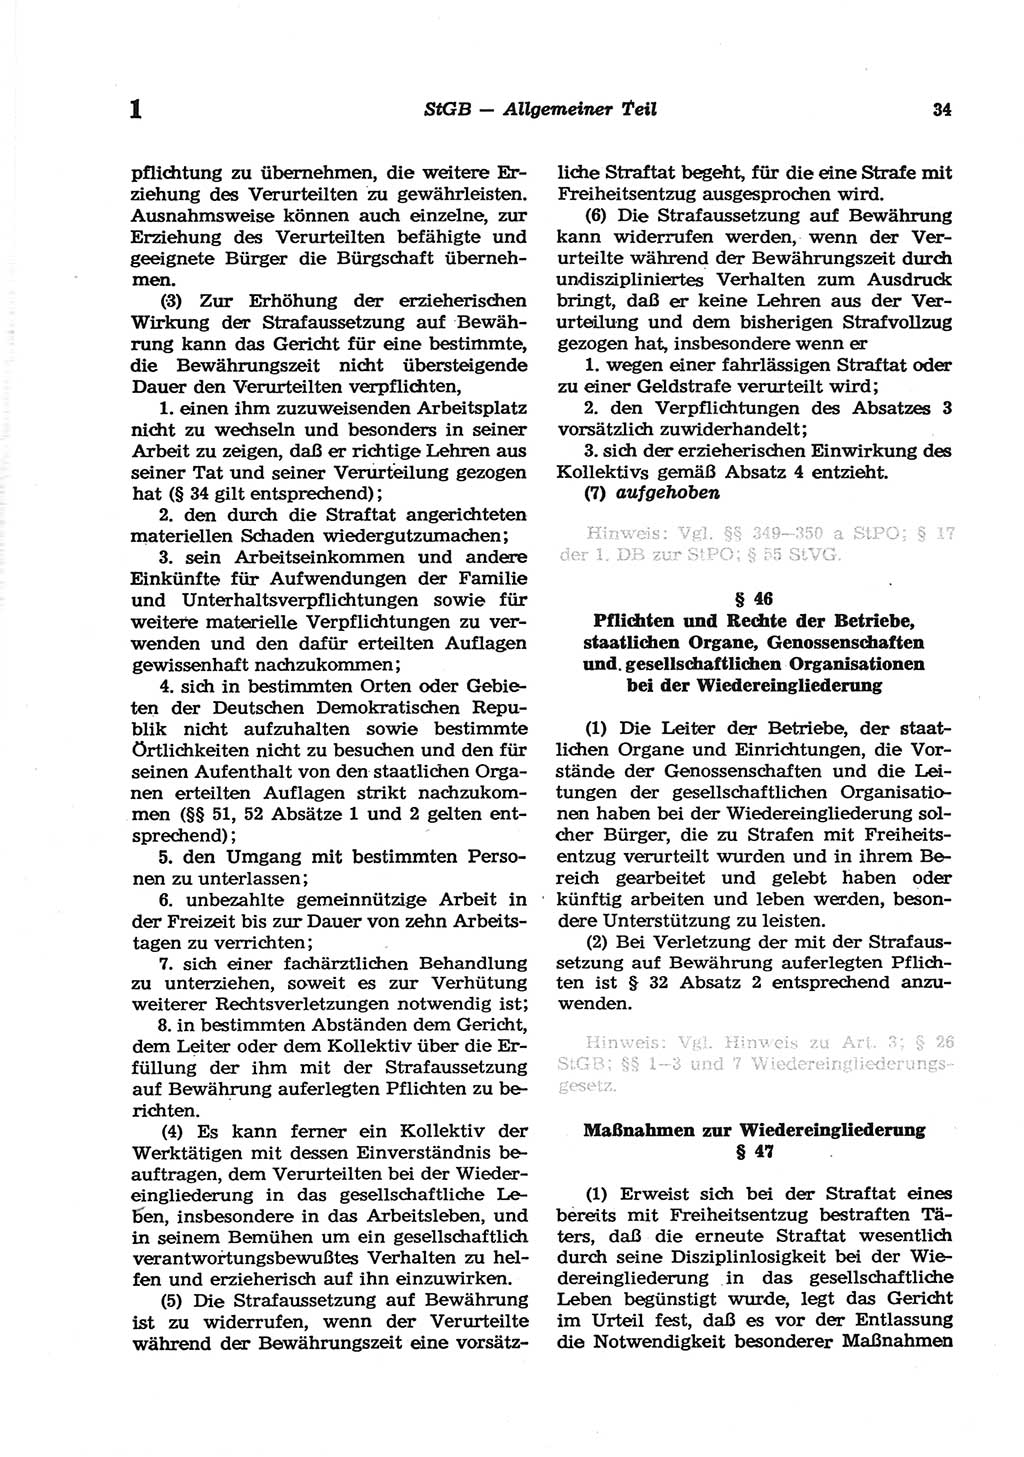 Strafgesetzbuch (StGB) der Deutschen Demokratischen Republik (DDR) und angrenzende Gesetze und Bestimmungen 1977, Seite 34 (StGB DDR Ges. Best. 1977, S. 34)